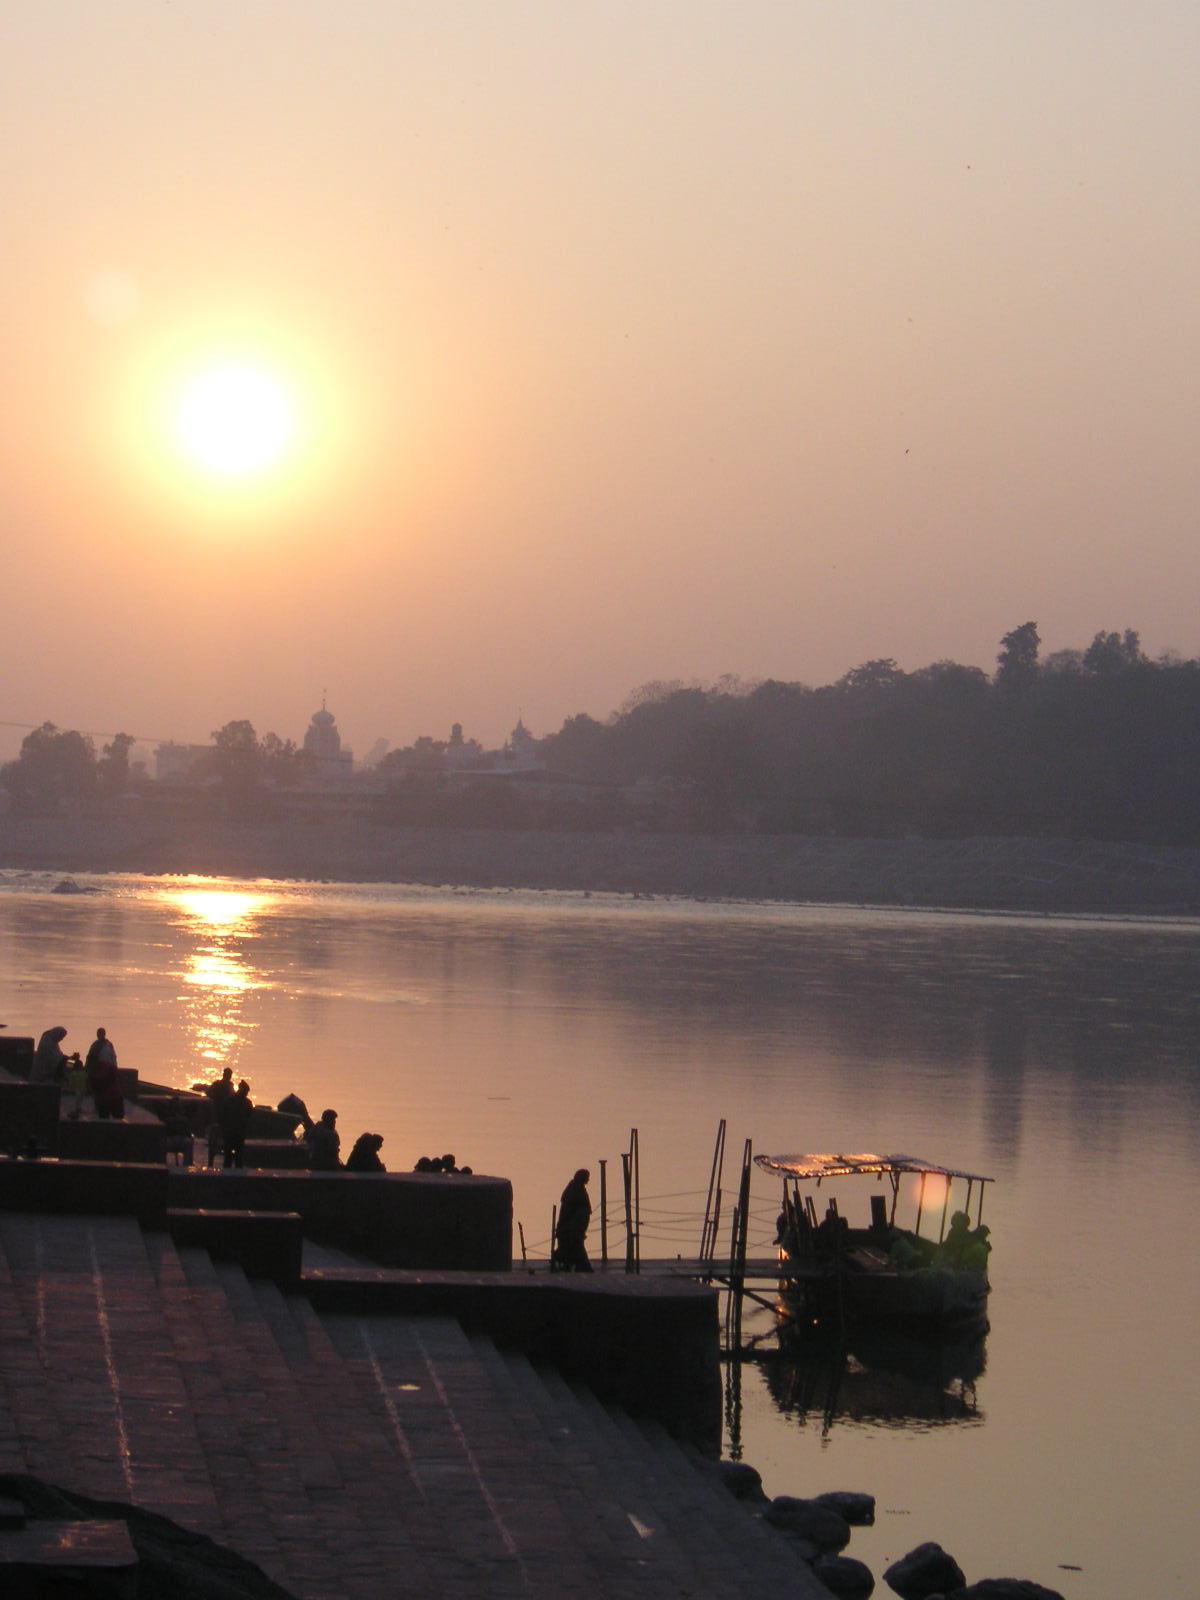 Sunrise in India